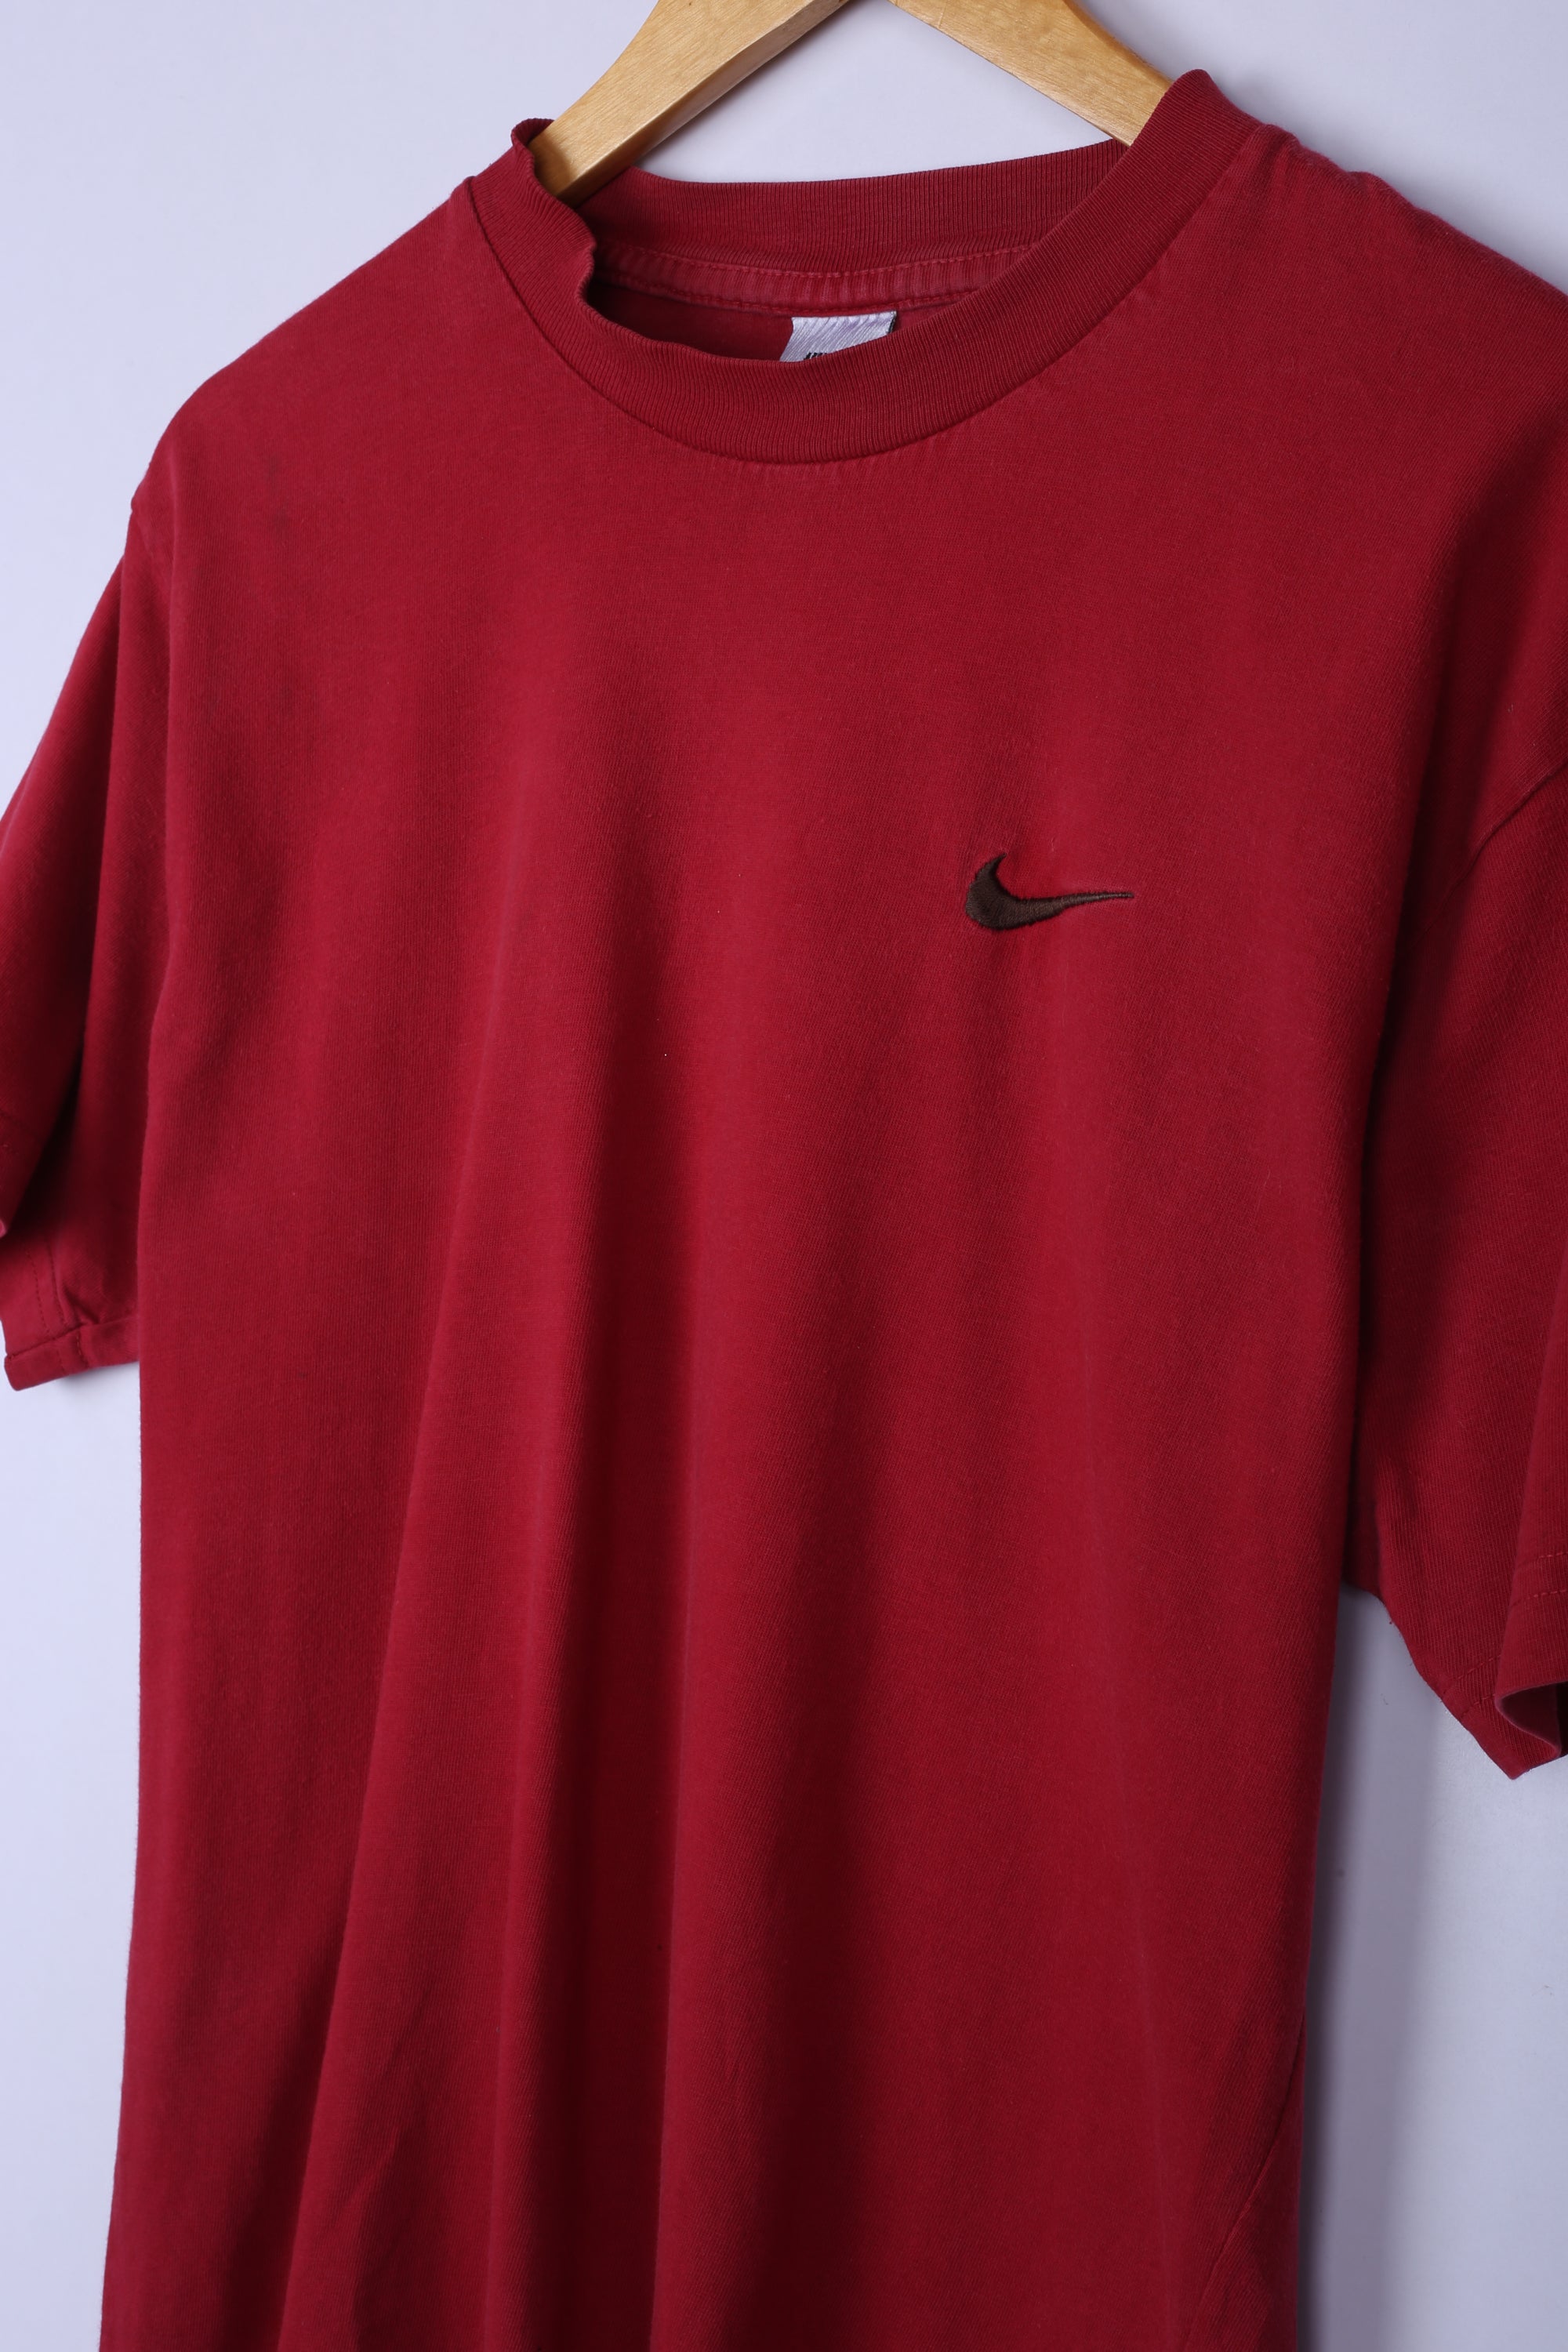 Vintage 90's Nike Tee Red